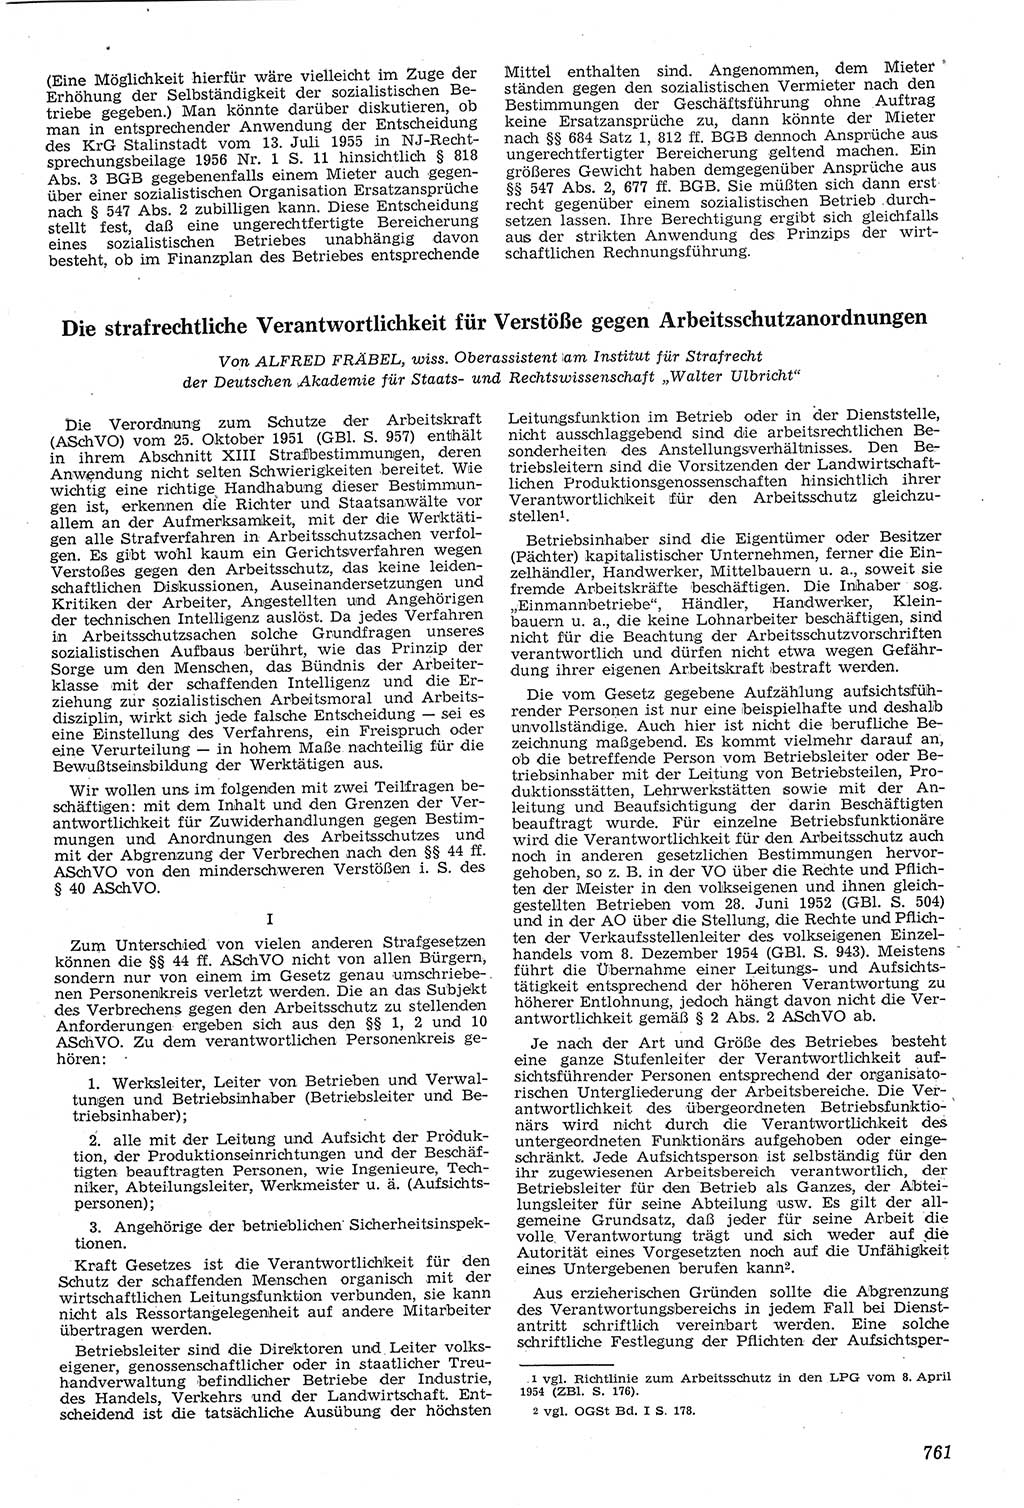 Neue Justiz (NJ), Zeitschrift für Recht und Rechtswissenschaft [Deutsche Demokratische Republik (DDR)], 11. Jahrgang 1957, Seite 761 (NJ DDR 1957, S. 761)